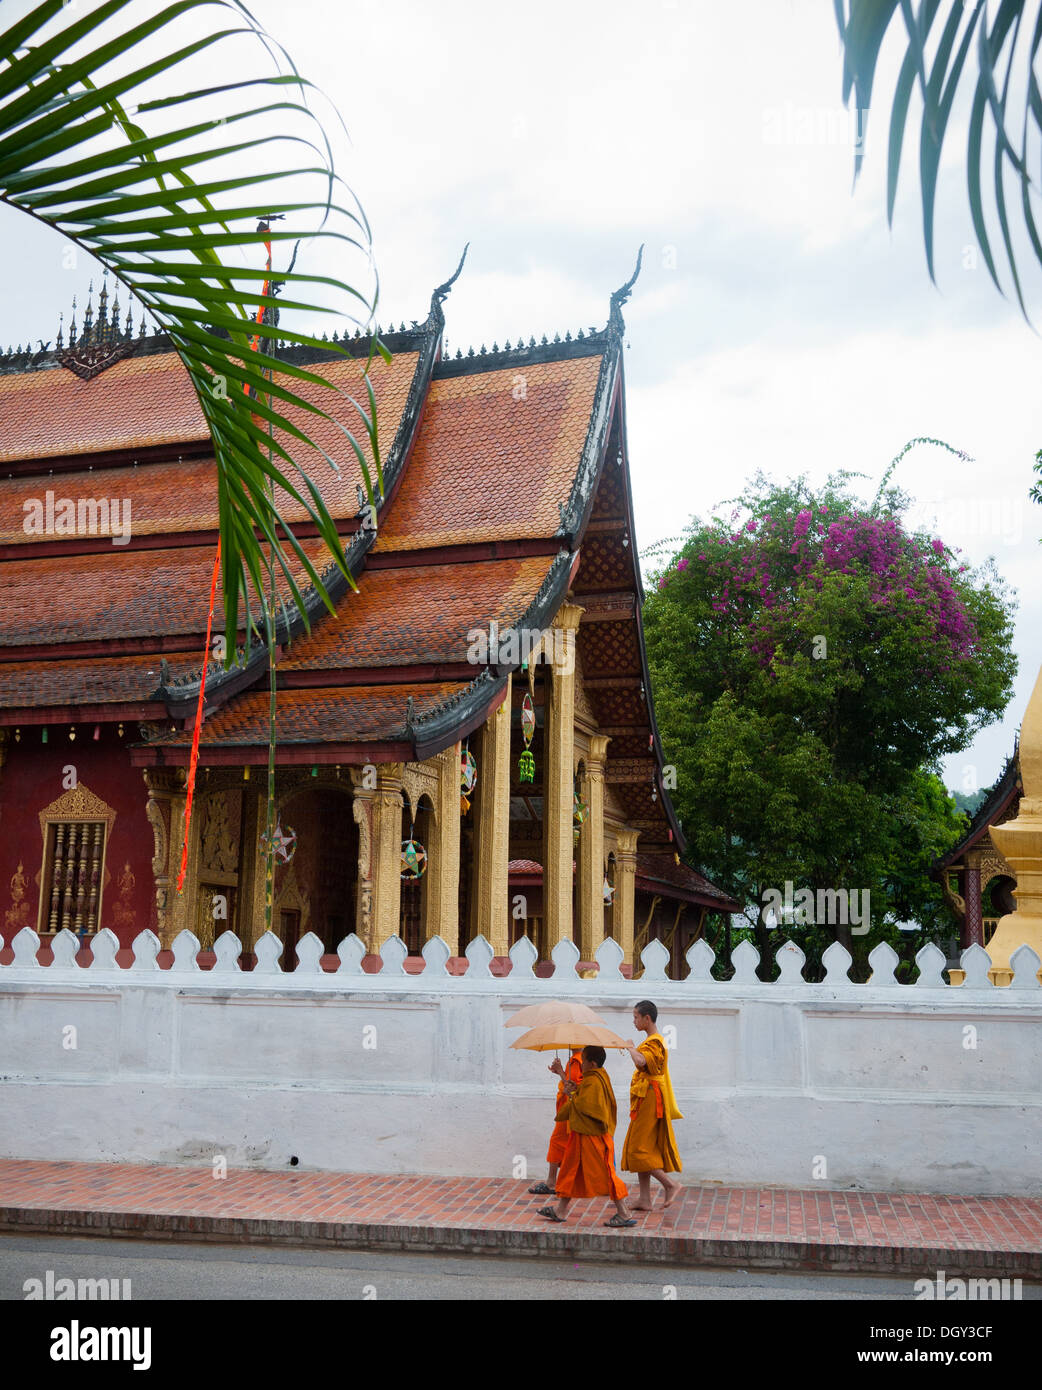 Un groupe de trois (3) des moines bouddhistes à pied par le Wat Sen temple bouddhiste à Luang Prabang, Laos. Banque D'Images